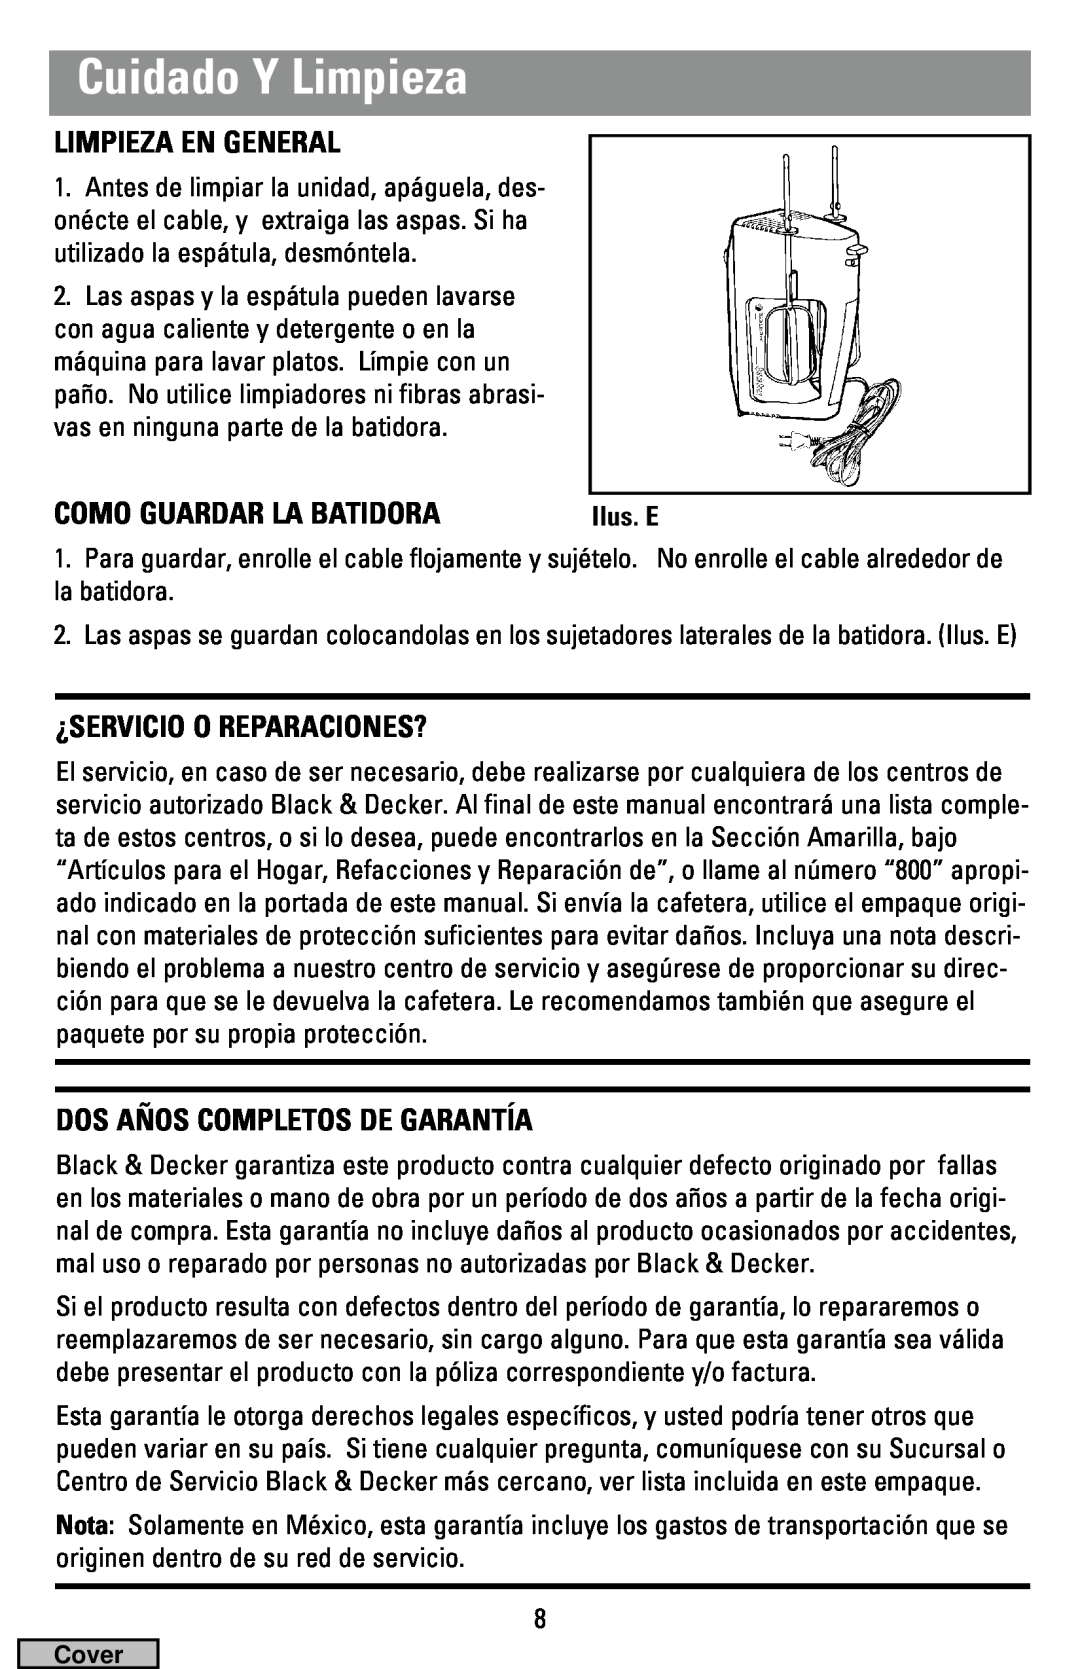 Black & Decker MX40 manual Cuidado Y Limpieza, Limpieza En General, Como Guardar La Batidora, ¿Servicio O Reparaciones? 